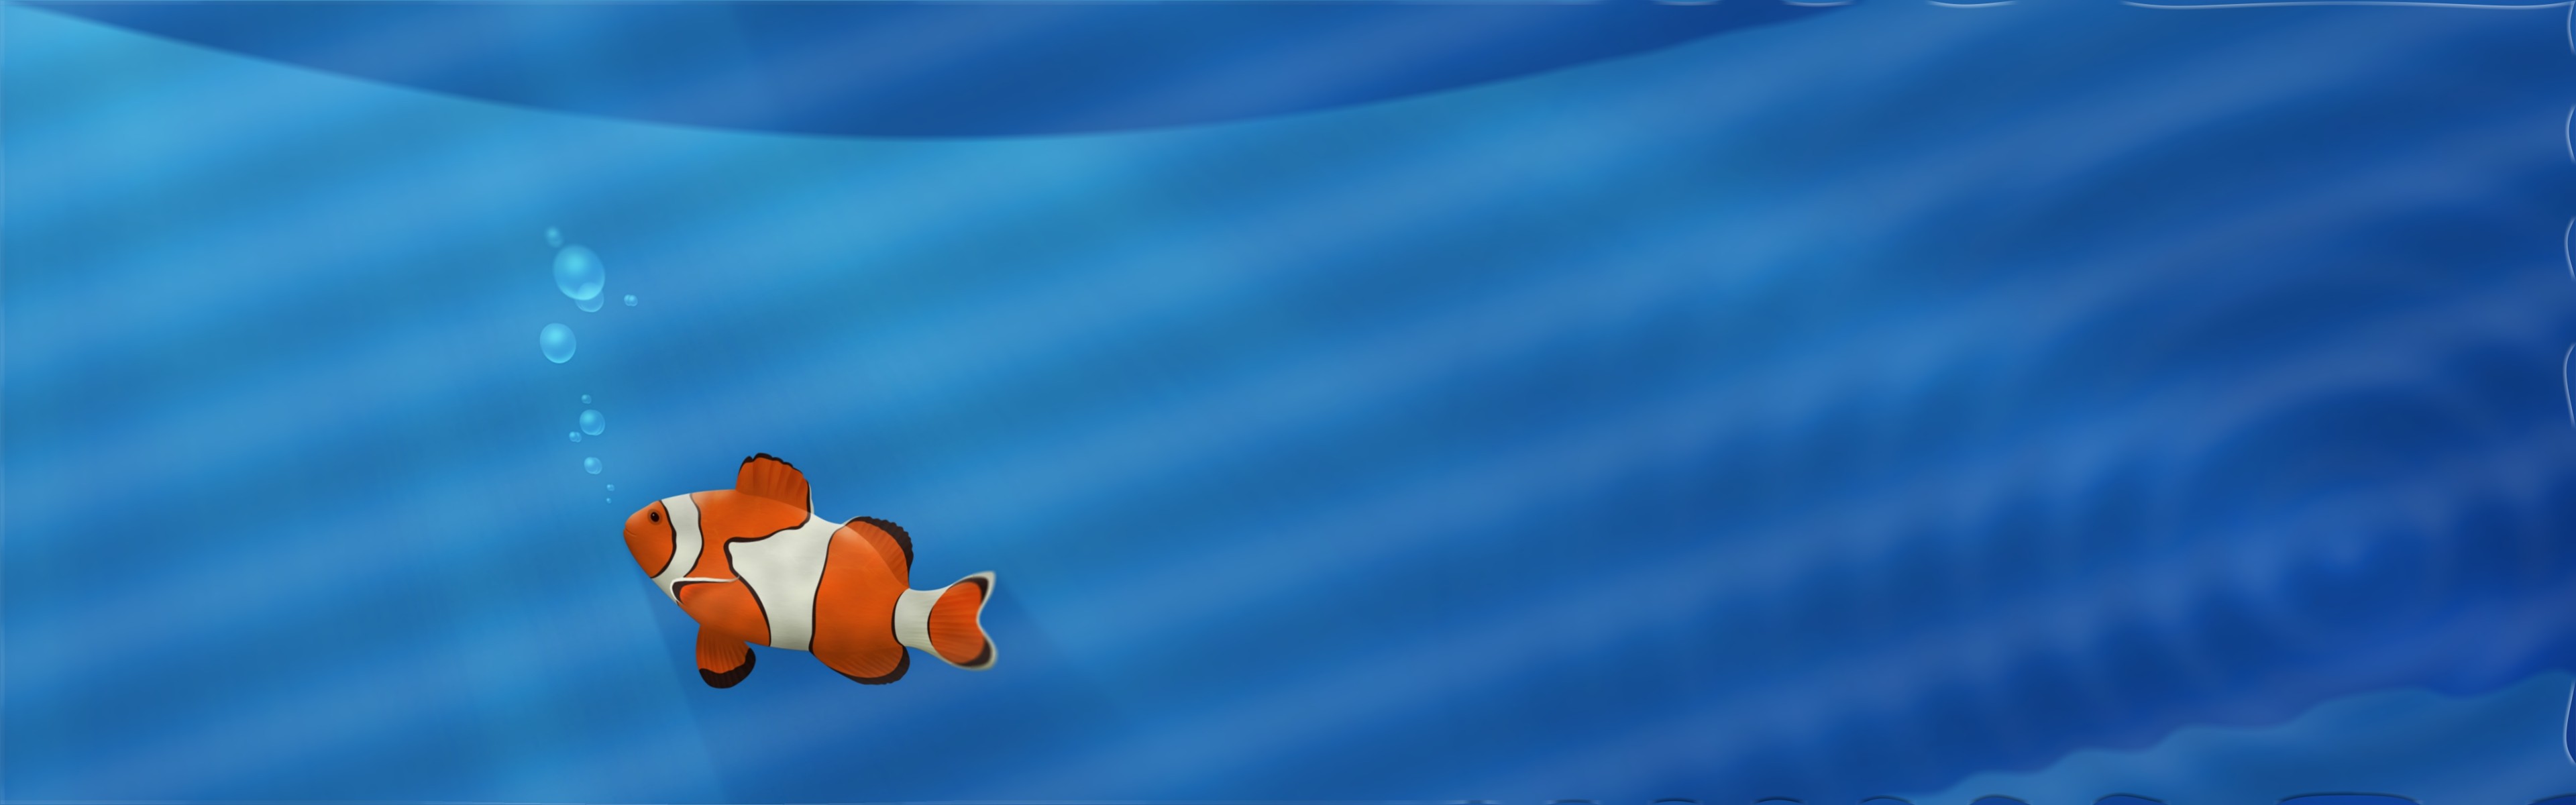 Animals Clownfish Underwater Fish 3840x1200